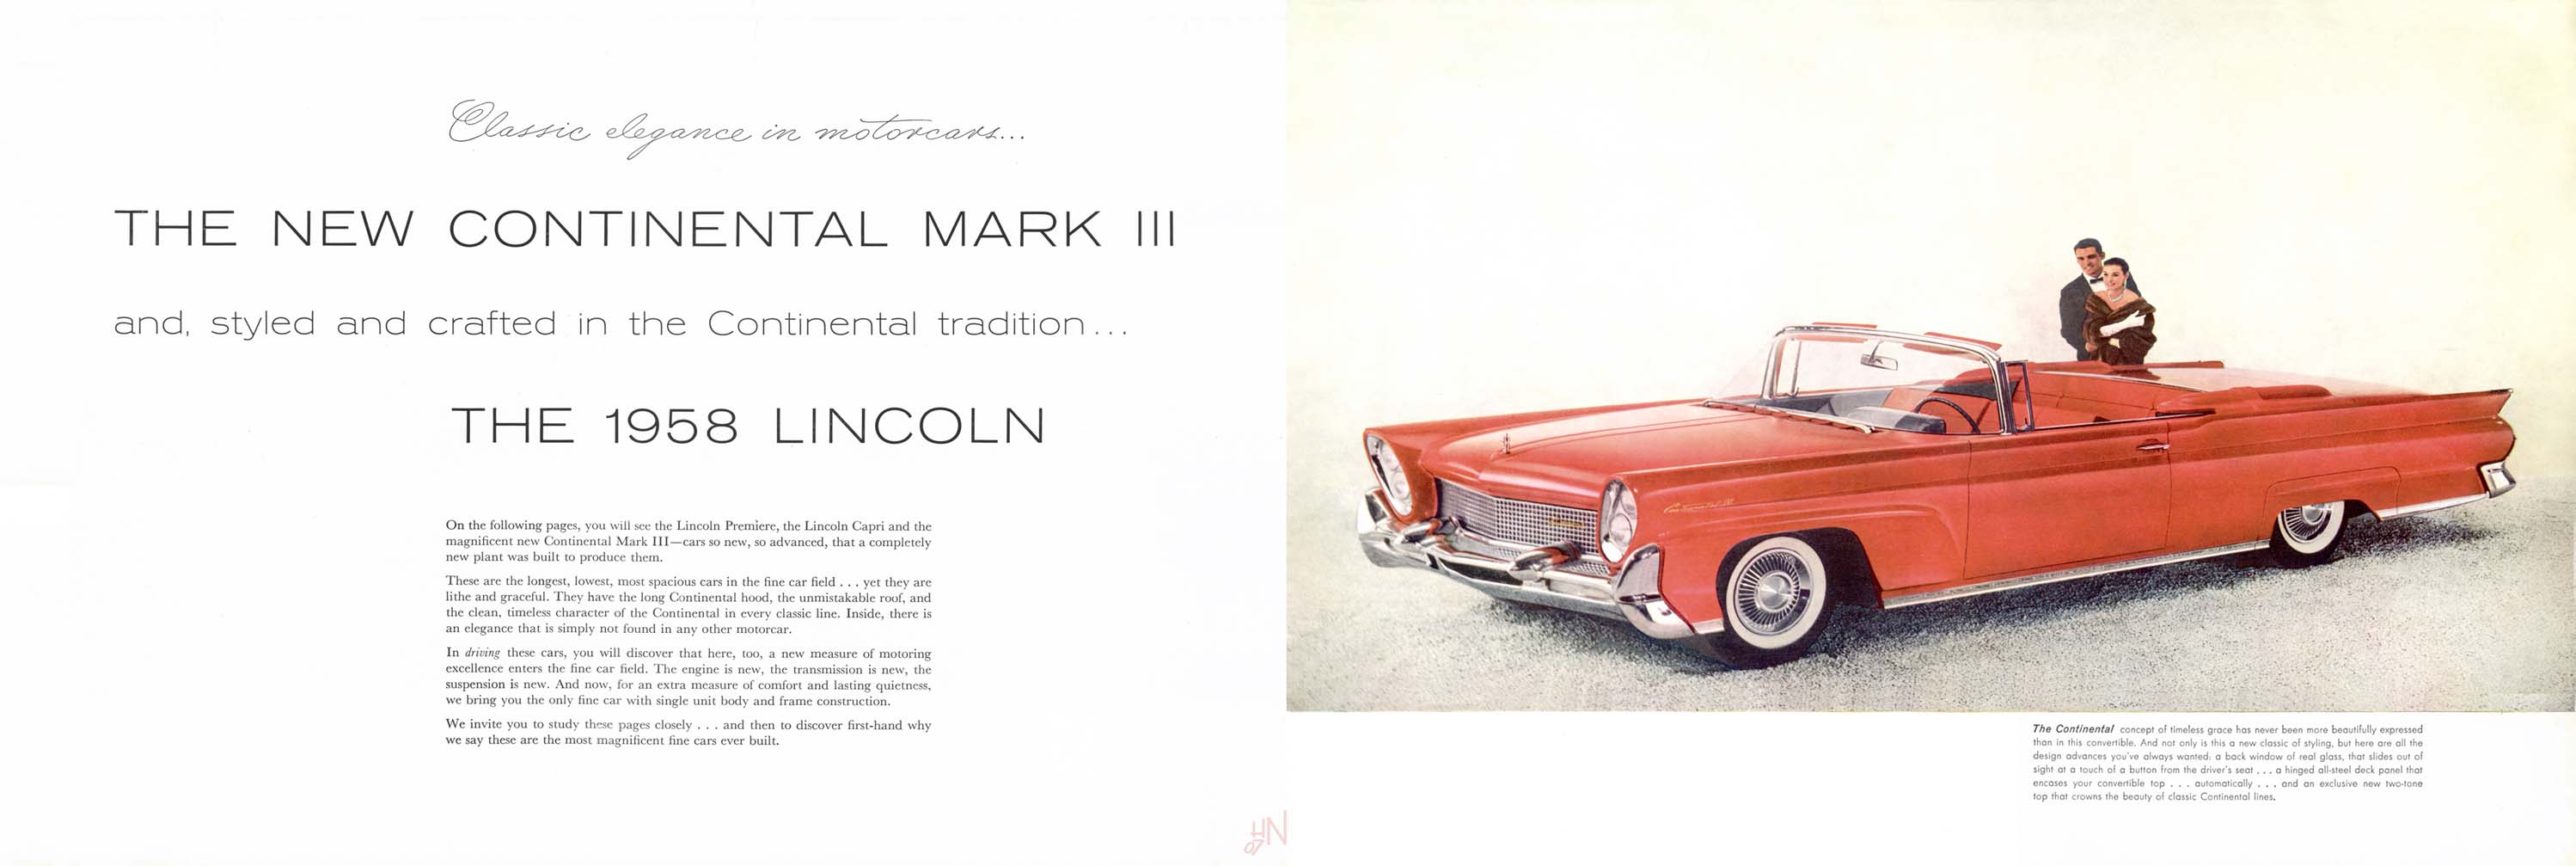 1958 Lincoln-02-03